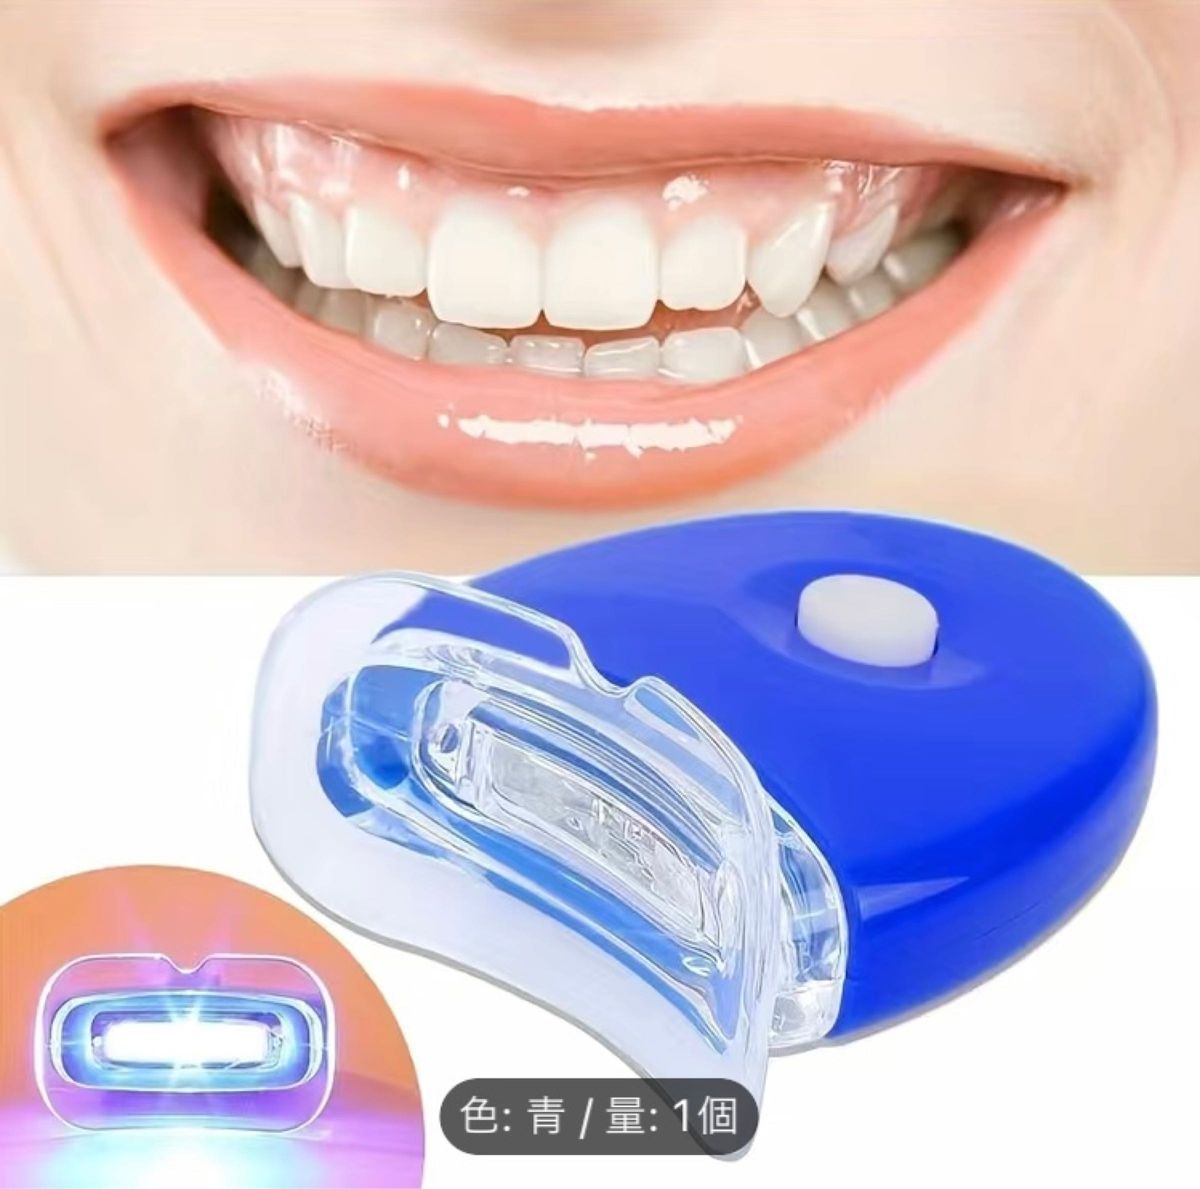 LED歯のホワイトニング器具、ポータブル充電式ブルーライト口腔ケアライトツール、電動歯科歯のホワイトニング器具